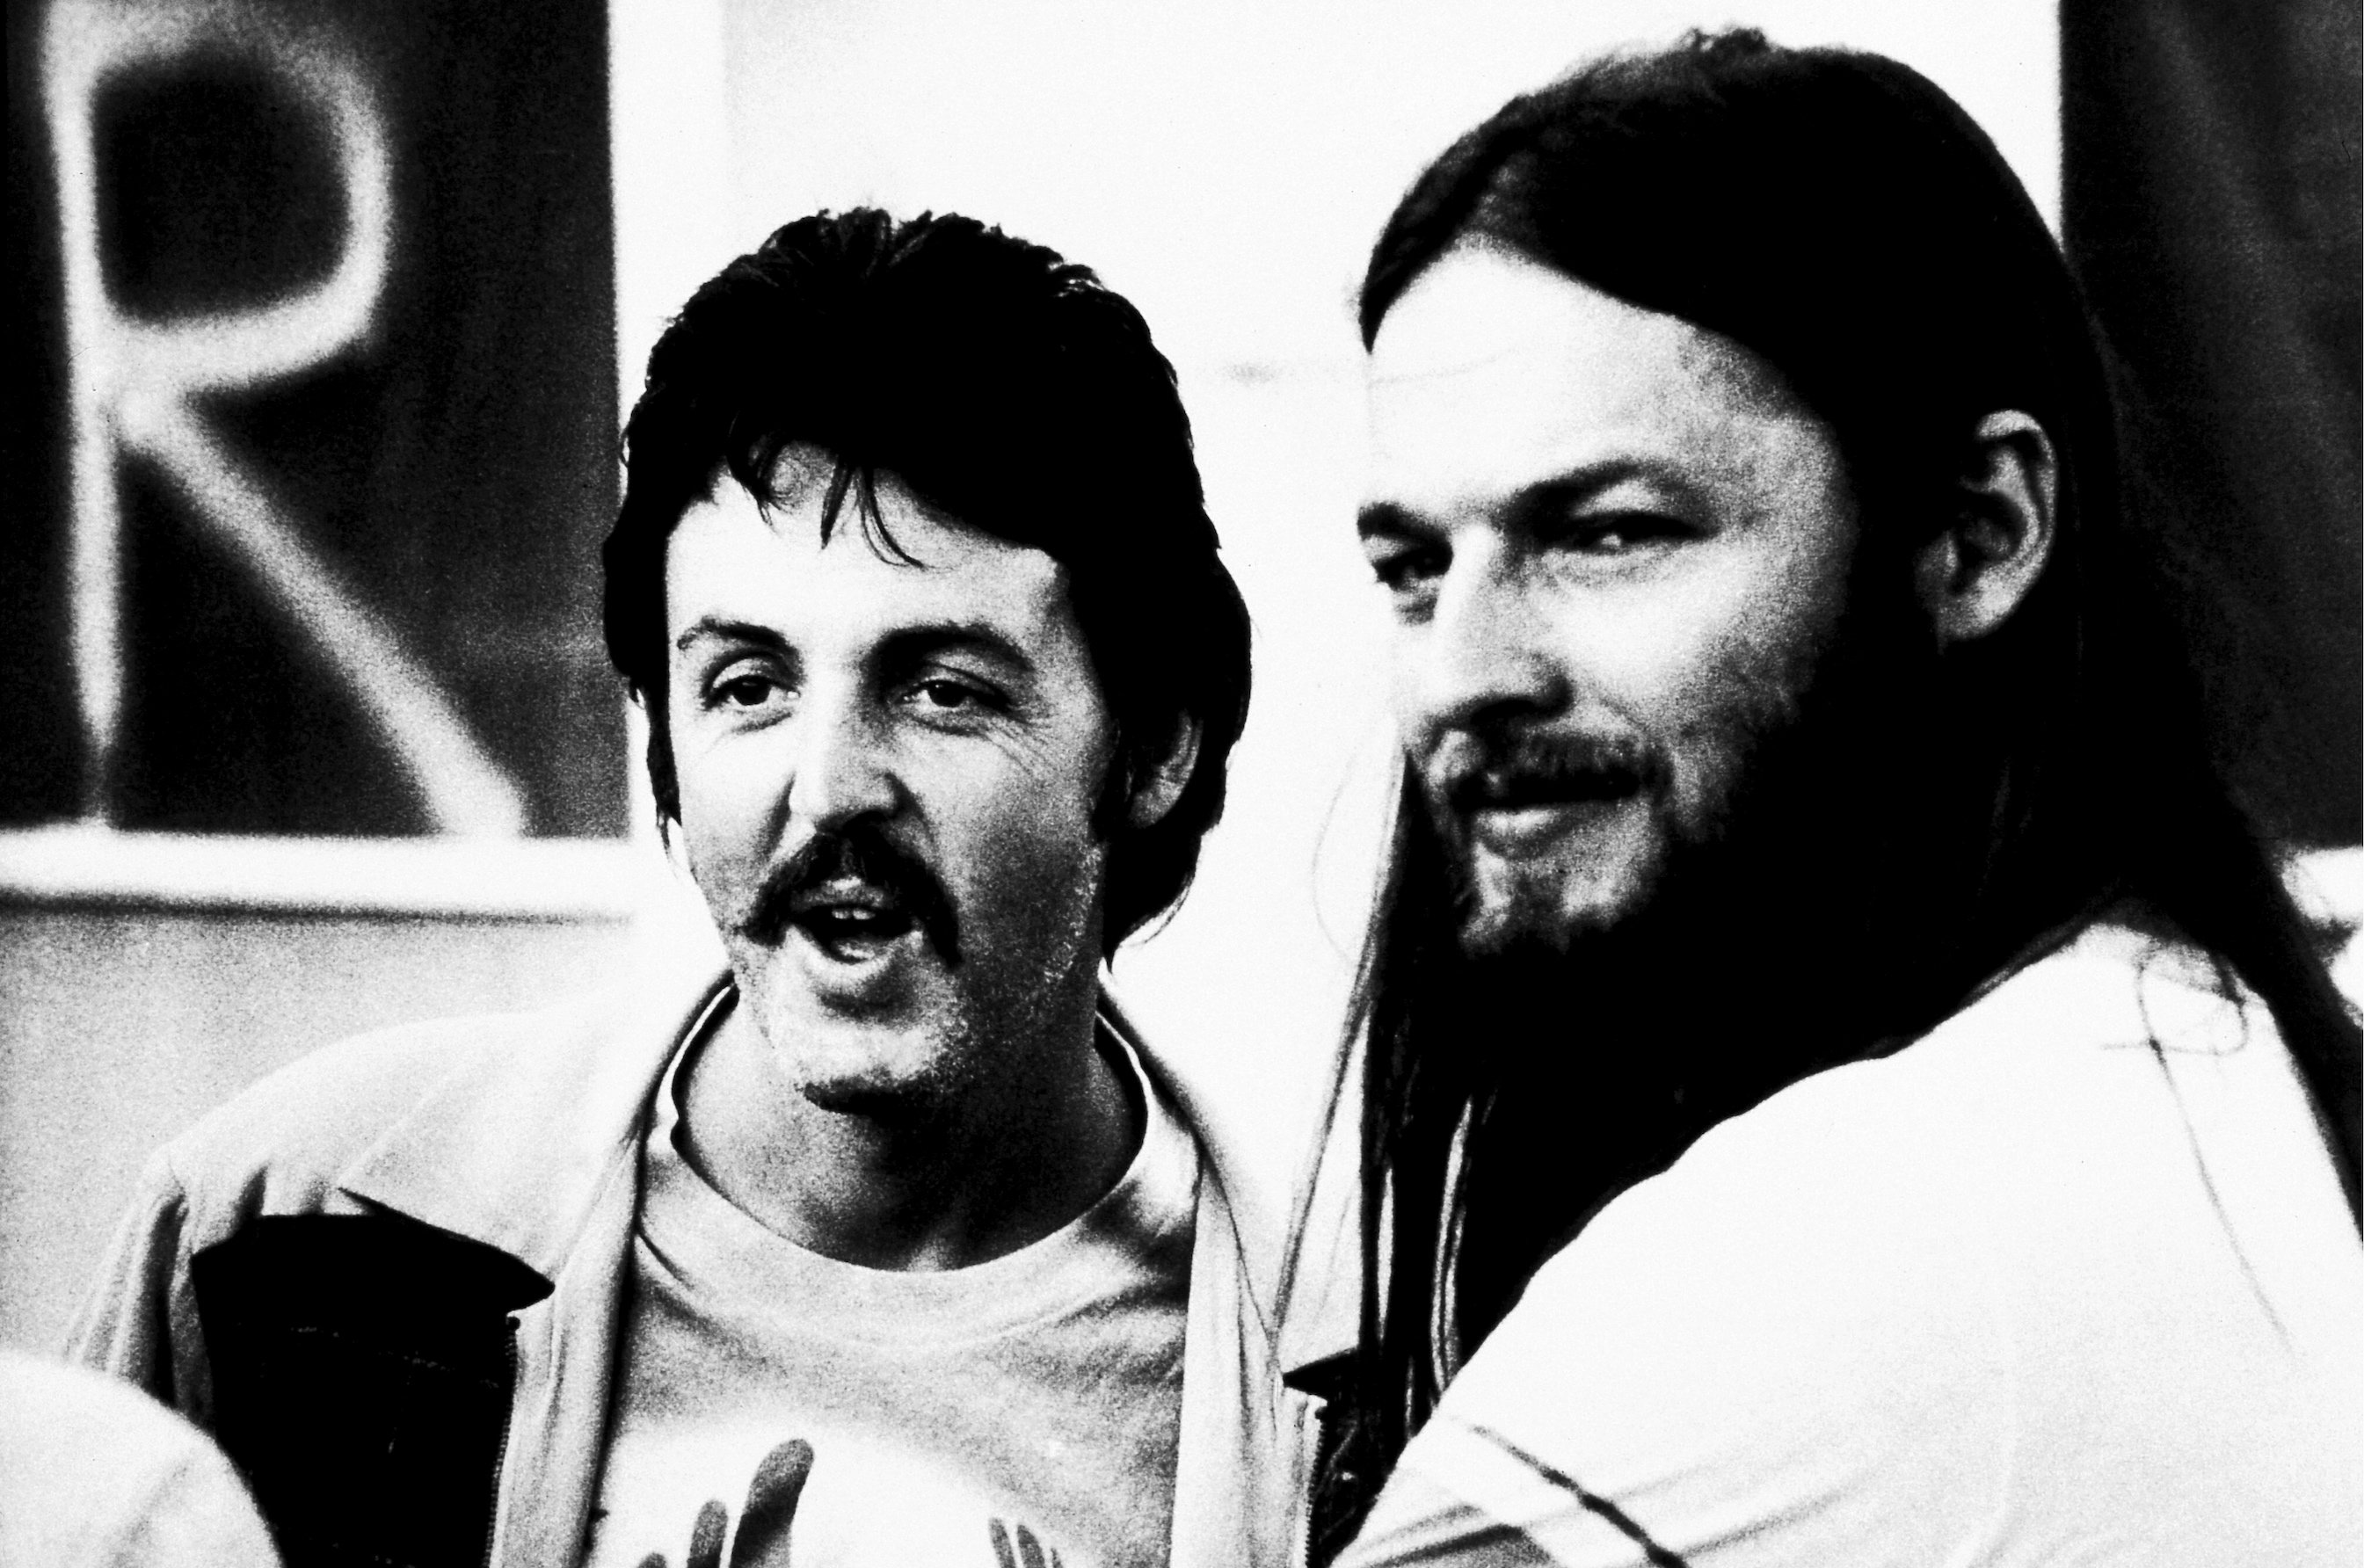 Paul McCartney hätte beinahe einen Gastauftritt in Pink Floyds „The Dark Side of the Moon“ gehabt